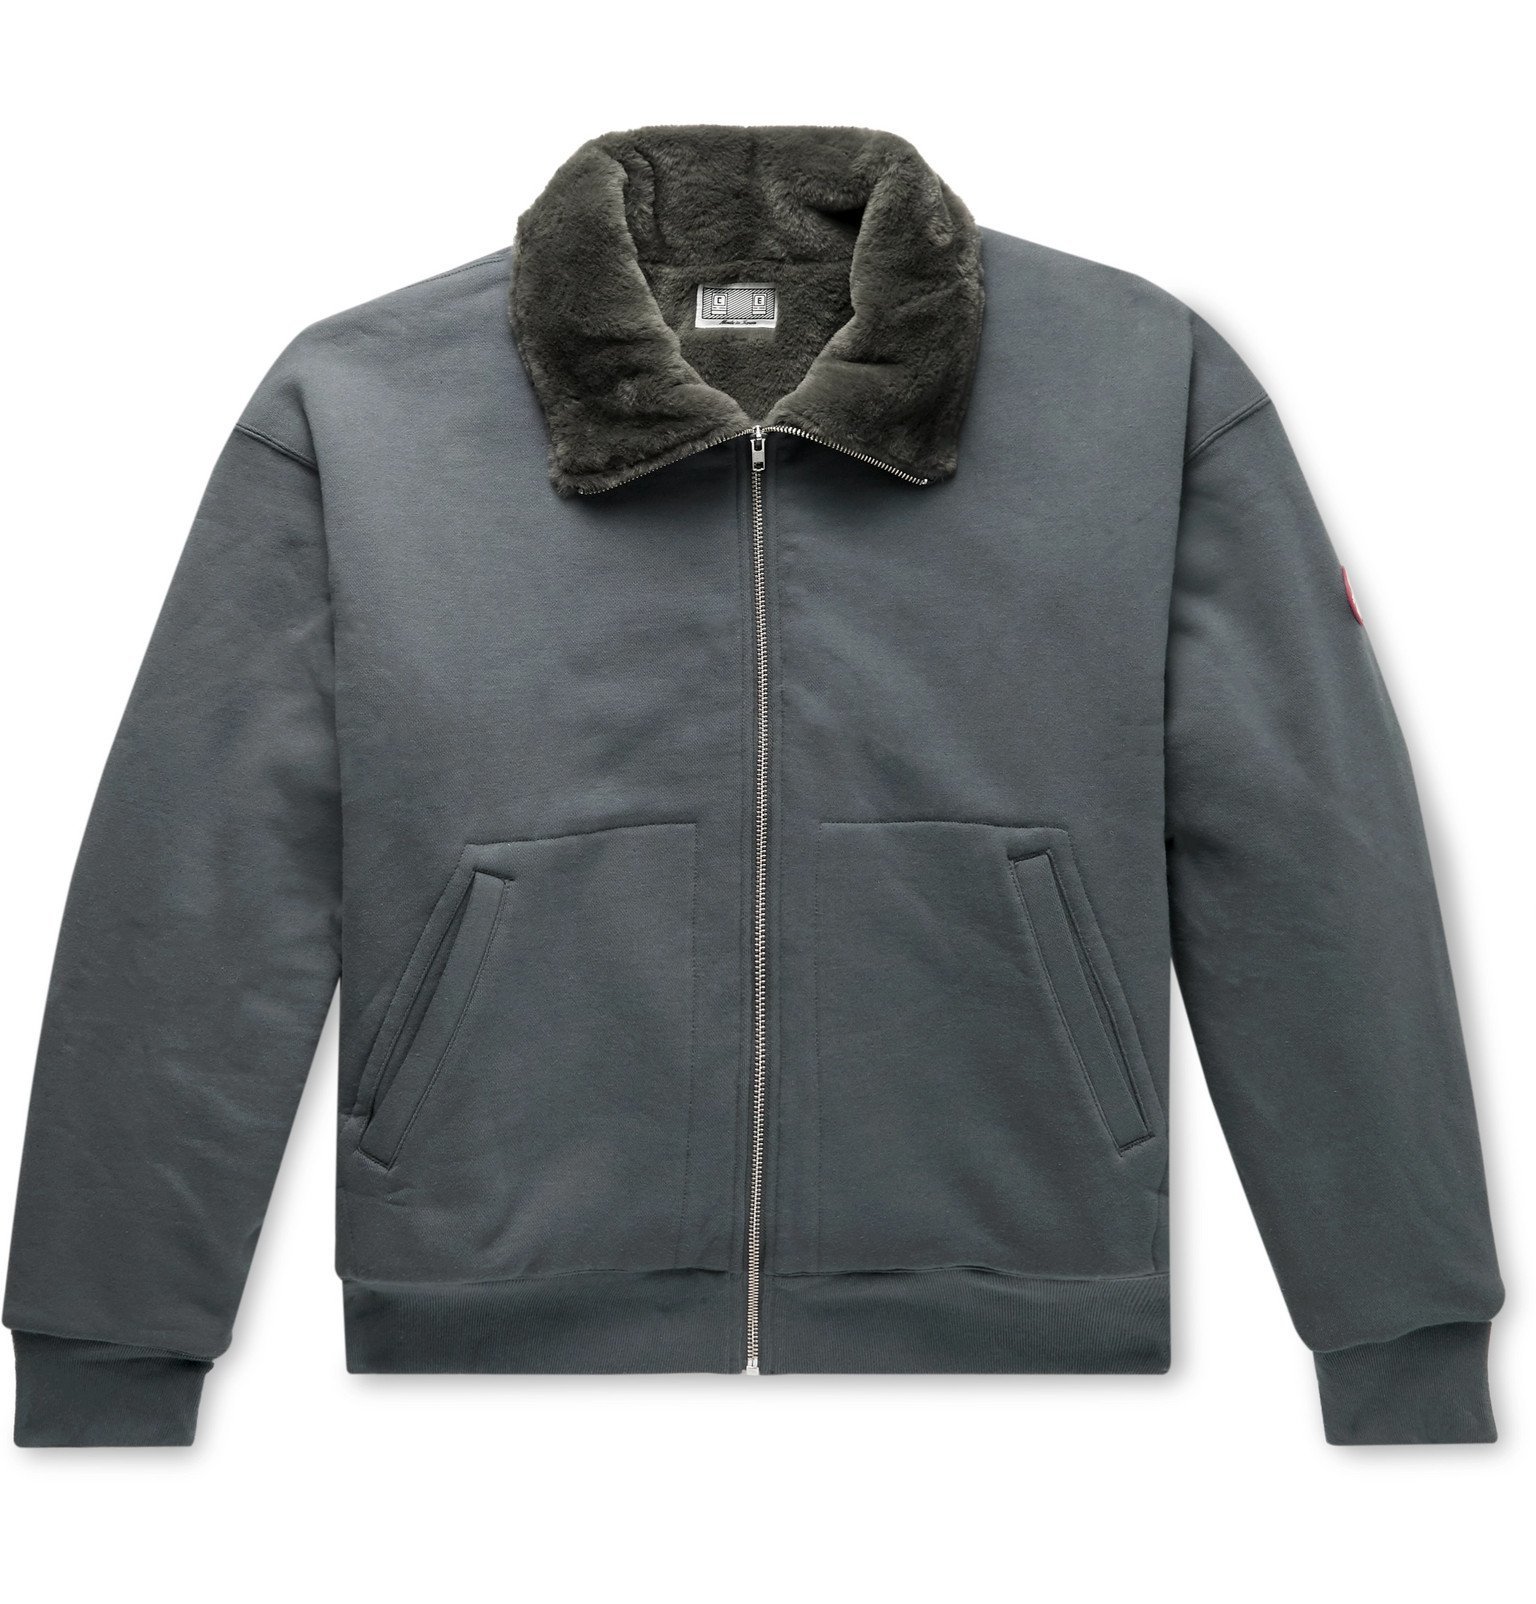 Cav Empt - Faux Fur-Lined Cotton-Jersey Zip-Up Sweatshirt - Gray 